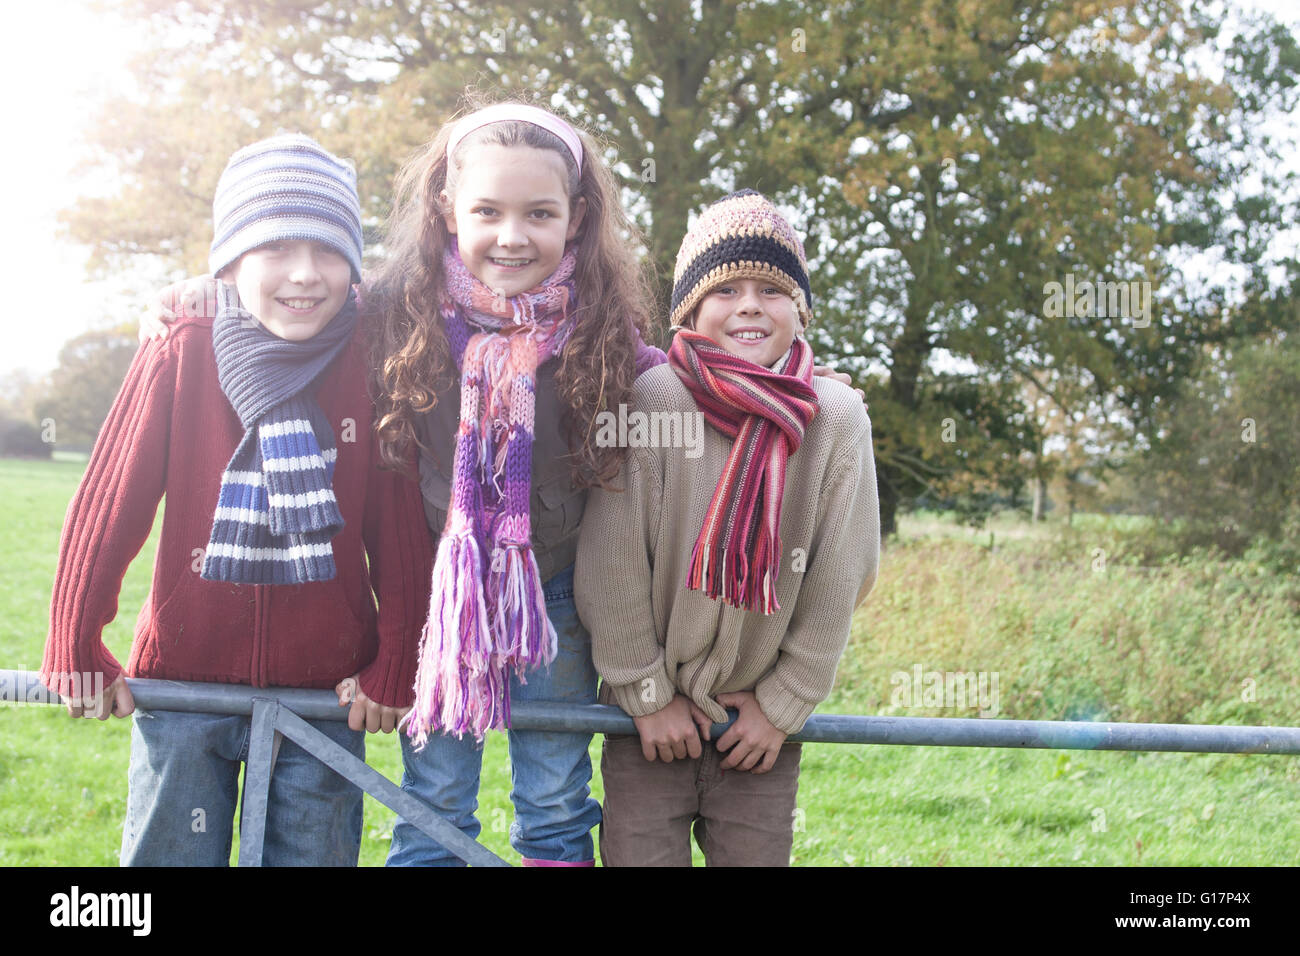 Porträt von drei Kindern, stützte sich auf Zaun, Lächeln Stockfoto